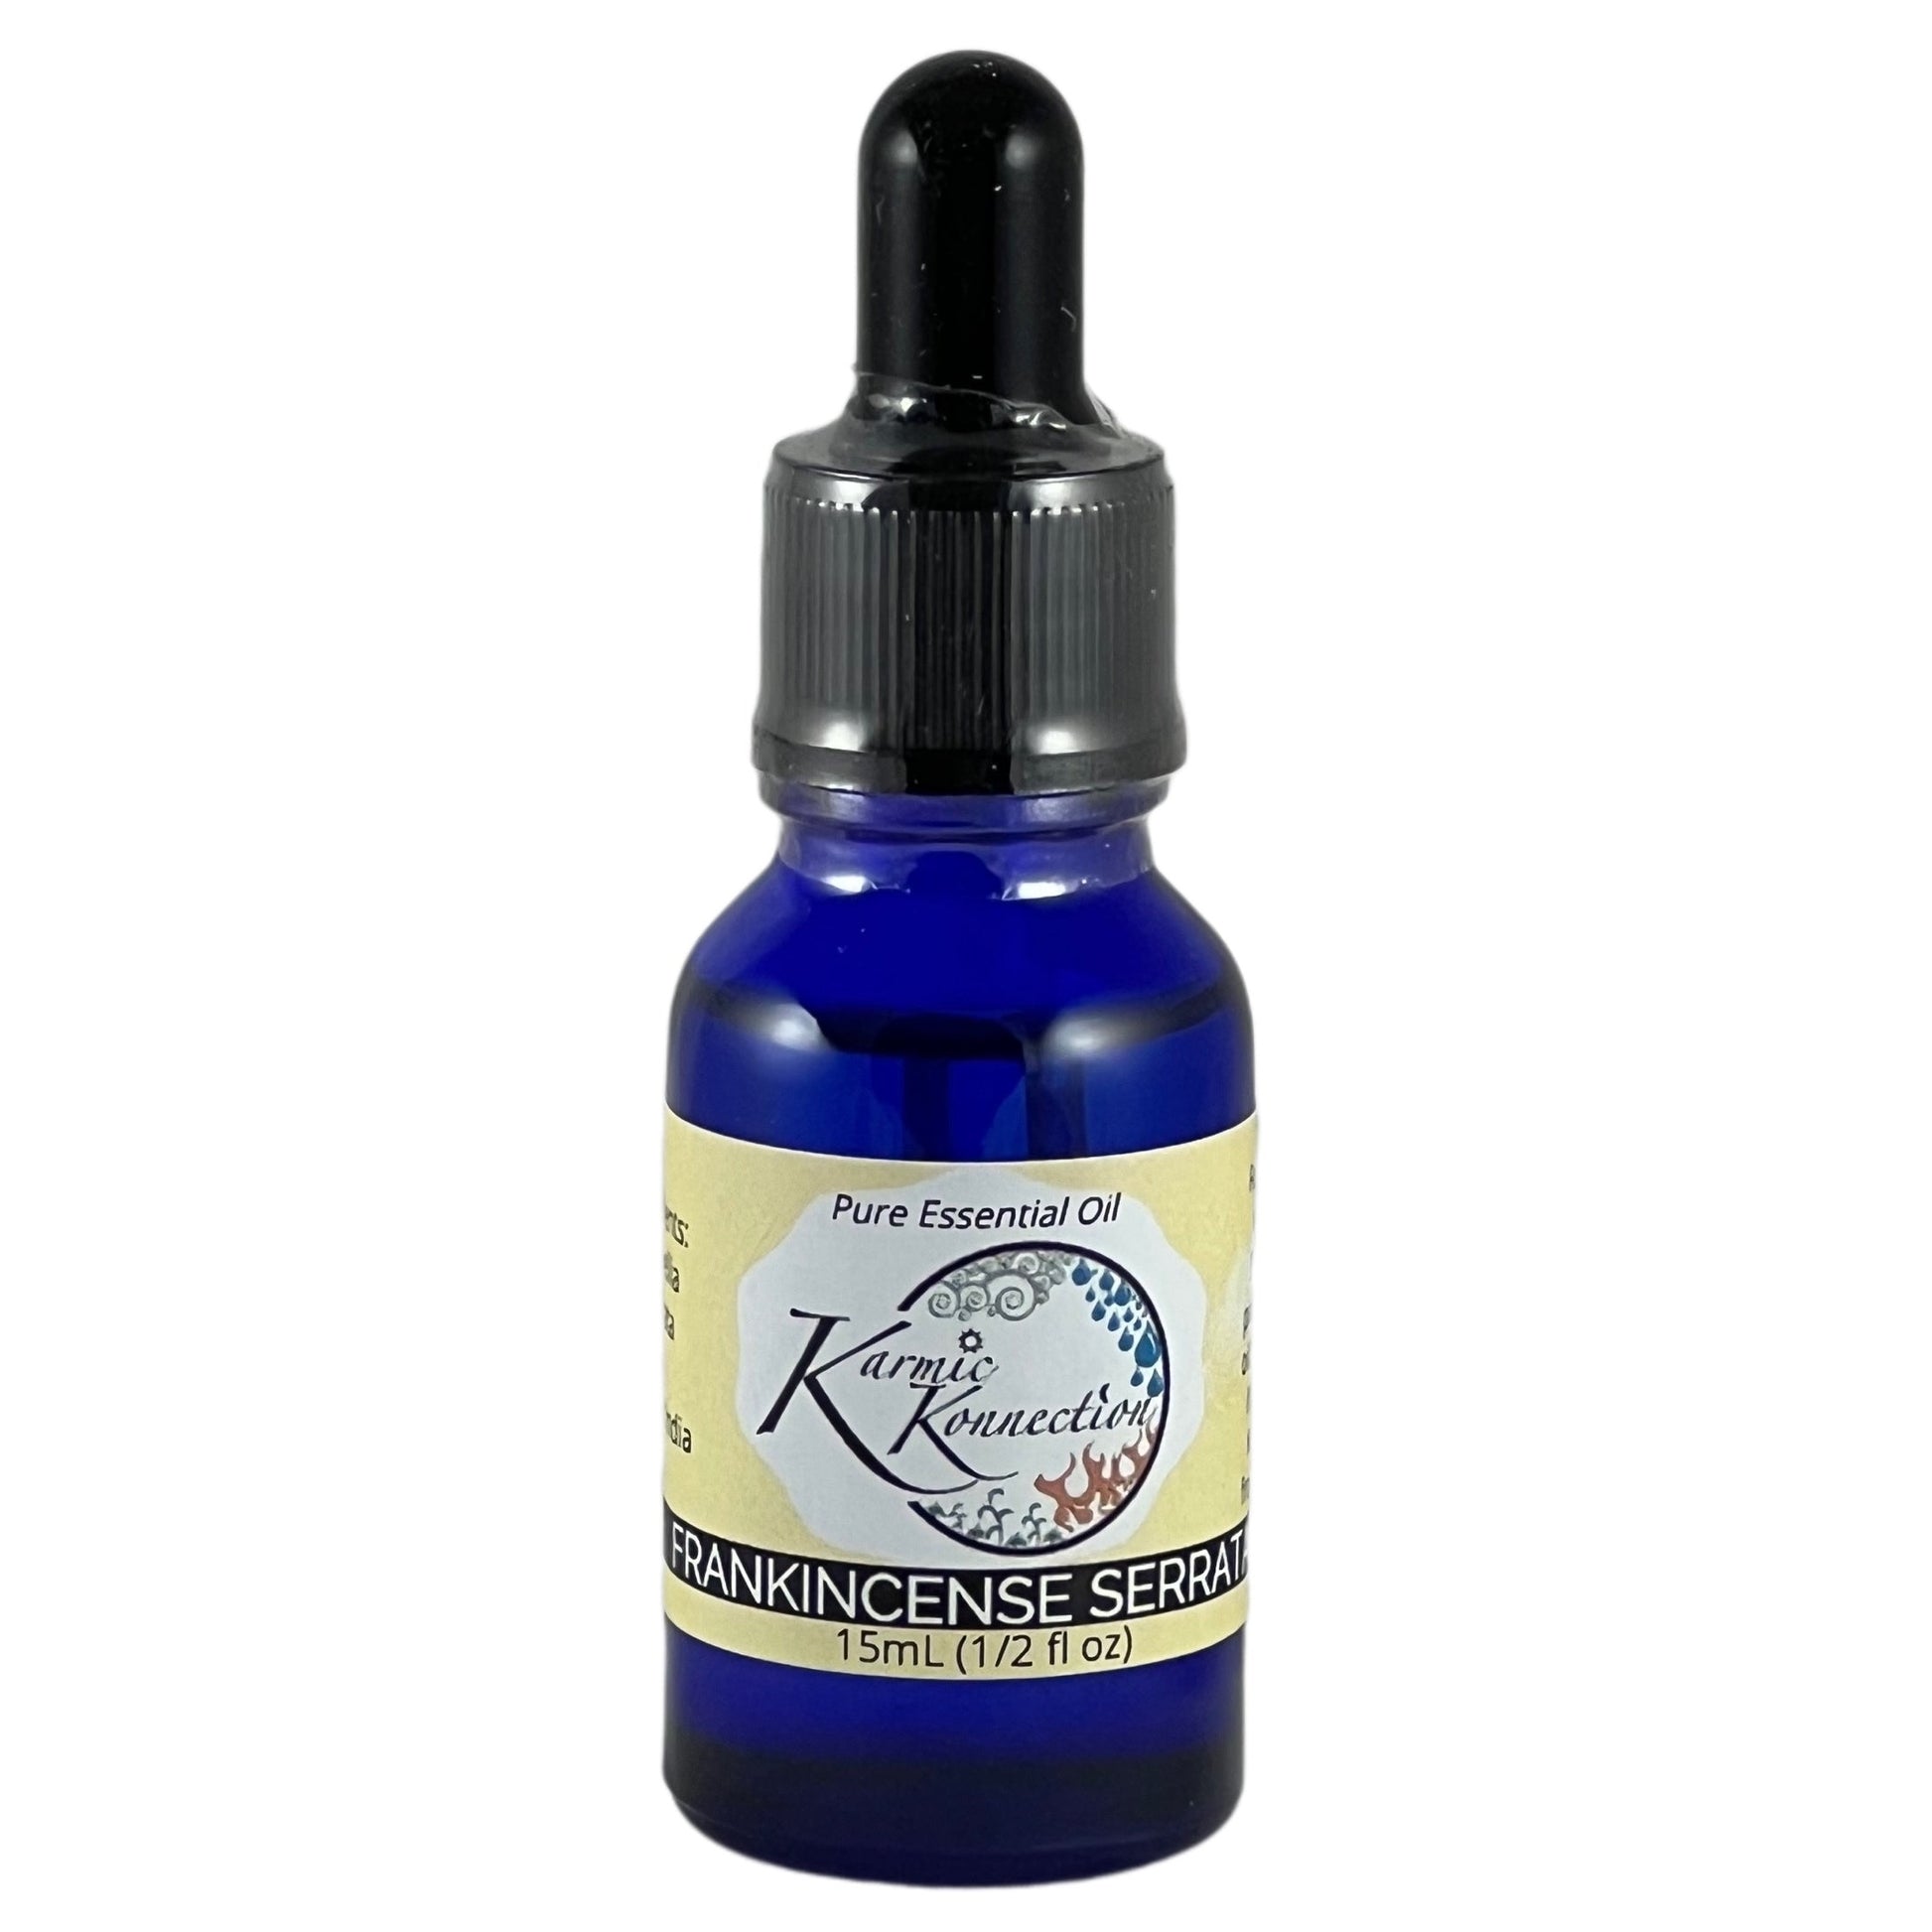 frankincense serrata 100% pure essential oil 1/2 oz